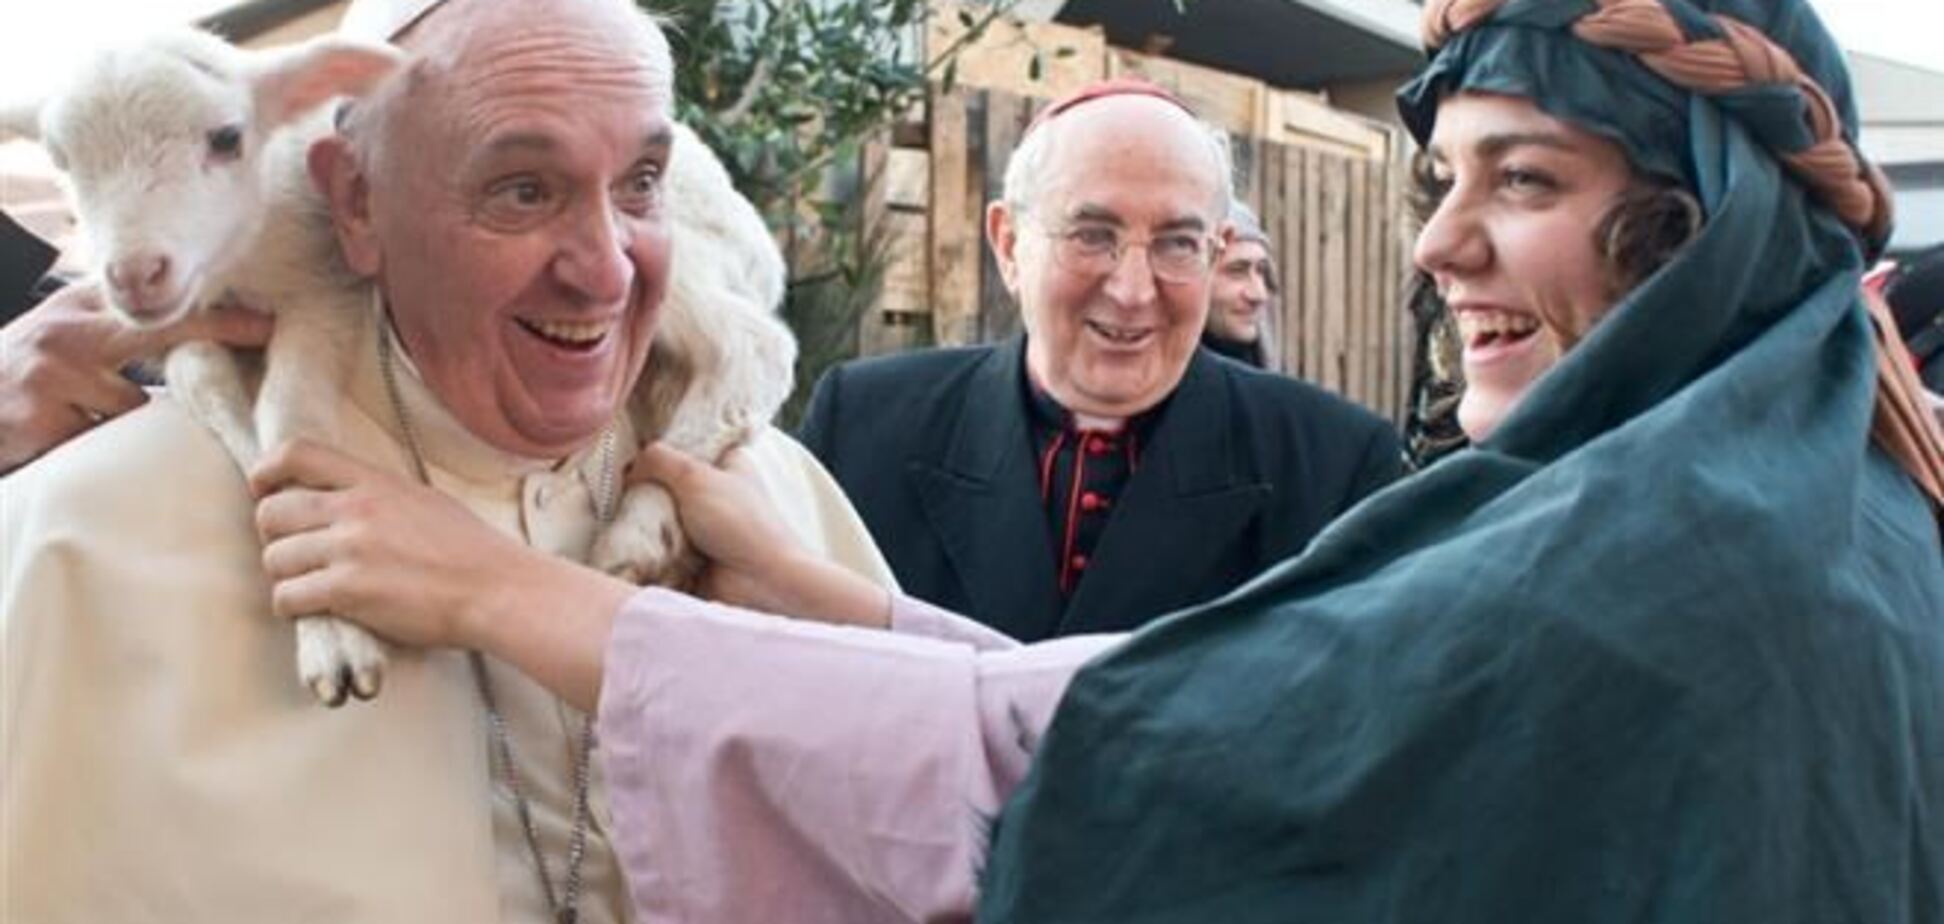 Фото Папы Франциска с ягненком 'растопило сердца'